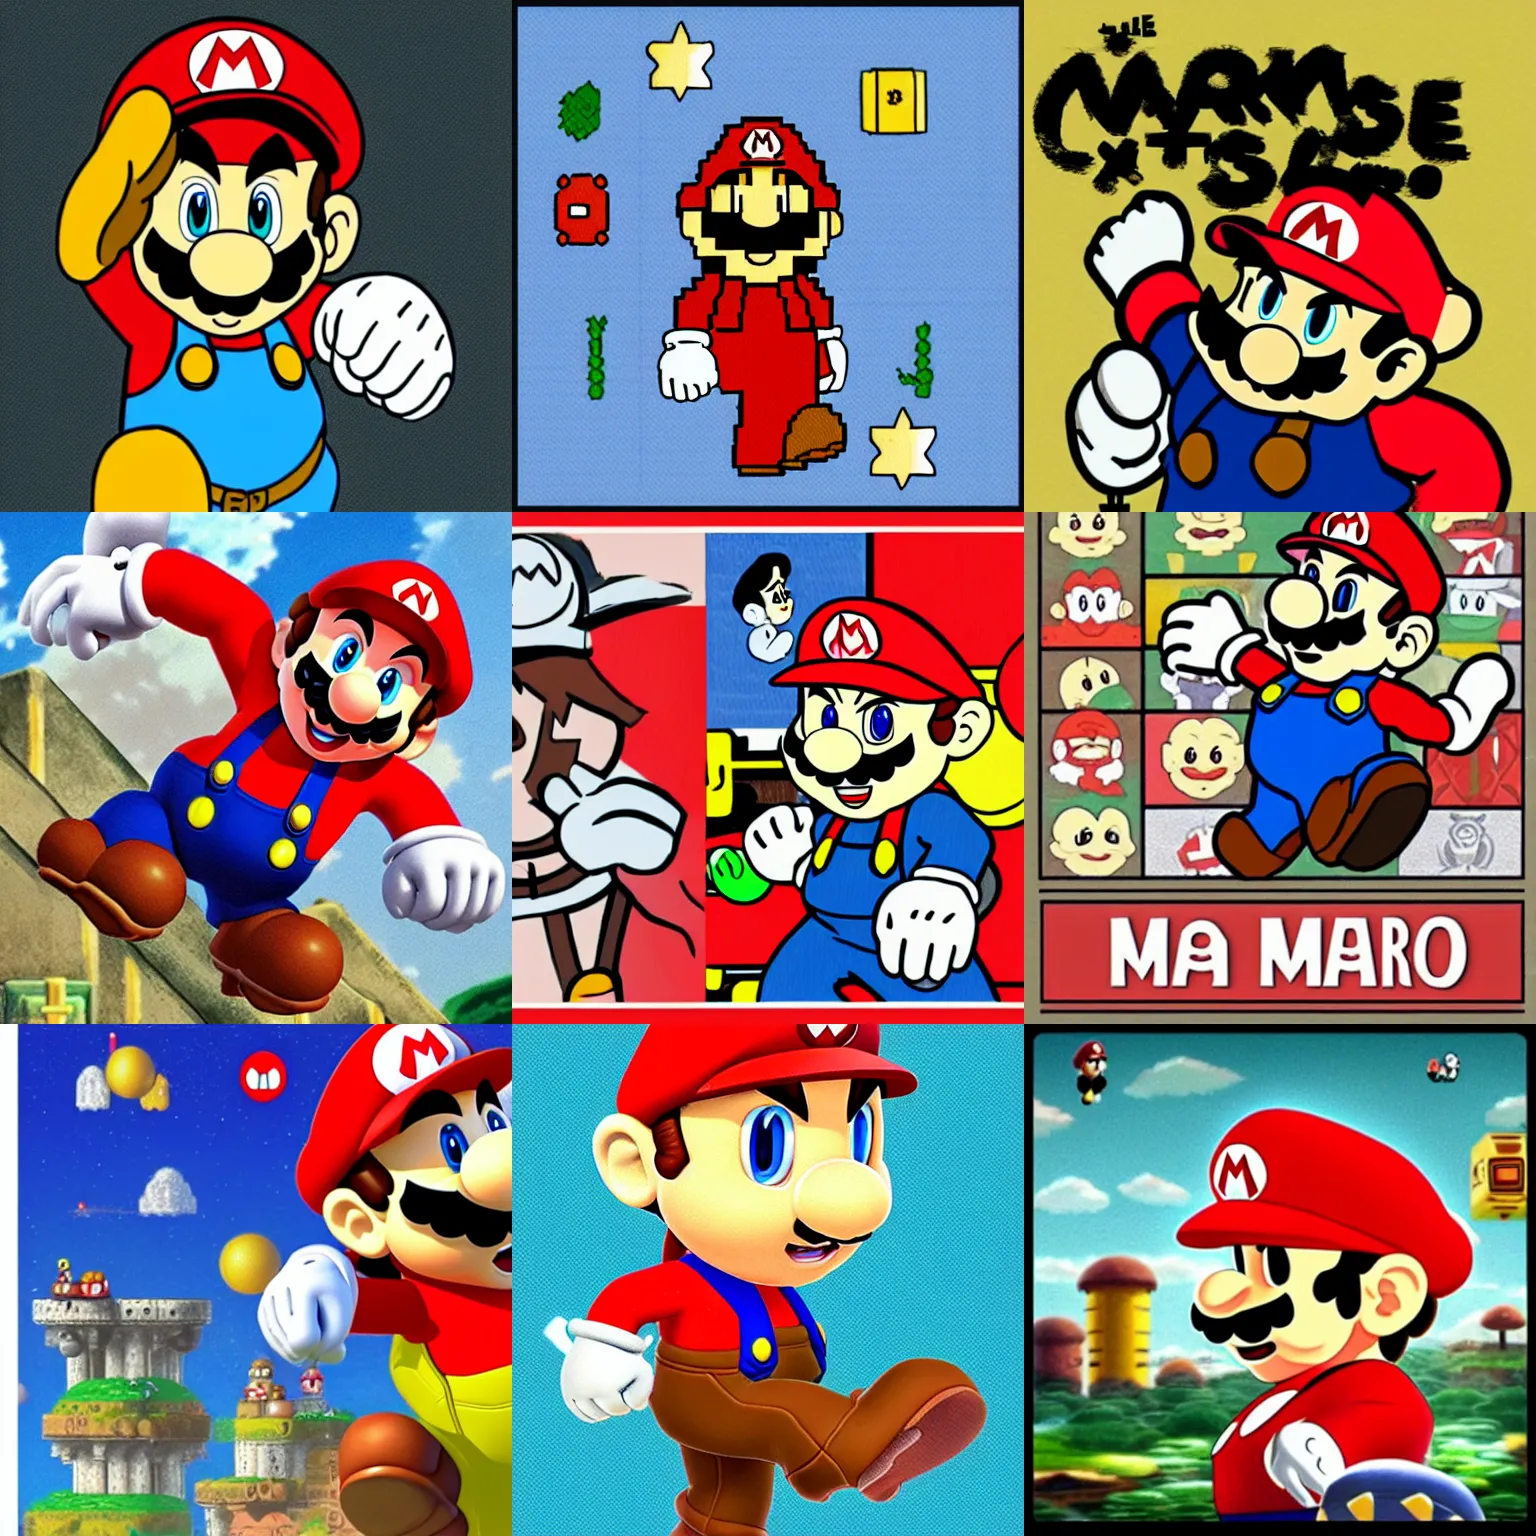 Prompt: Mario in the style of Hayao Miyazaki